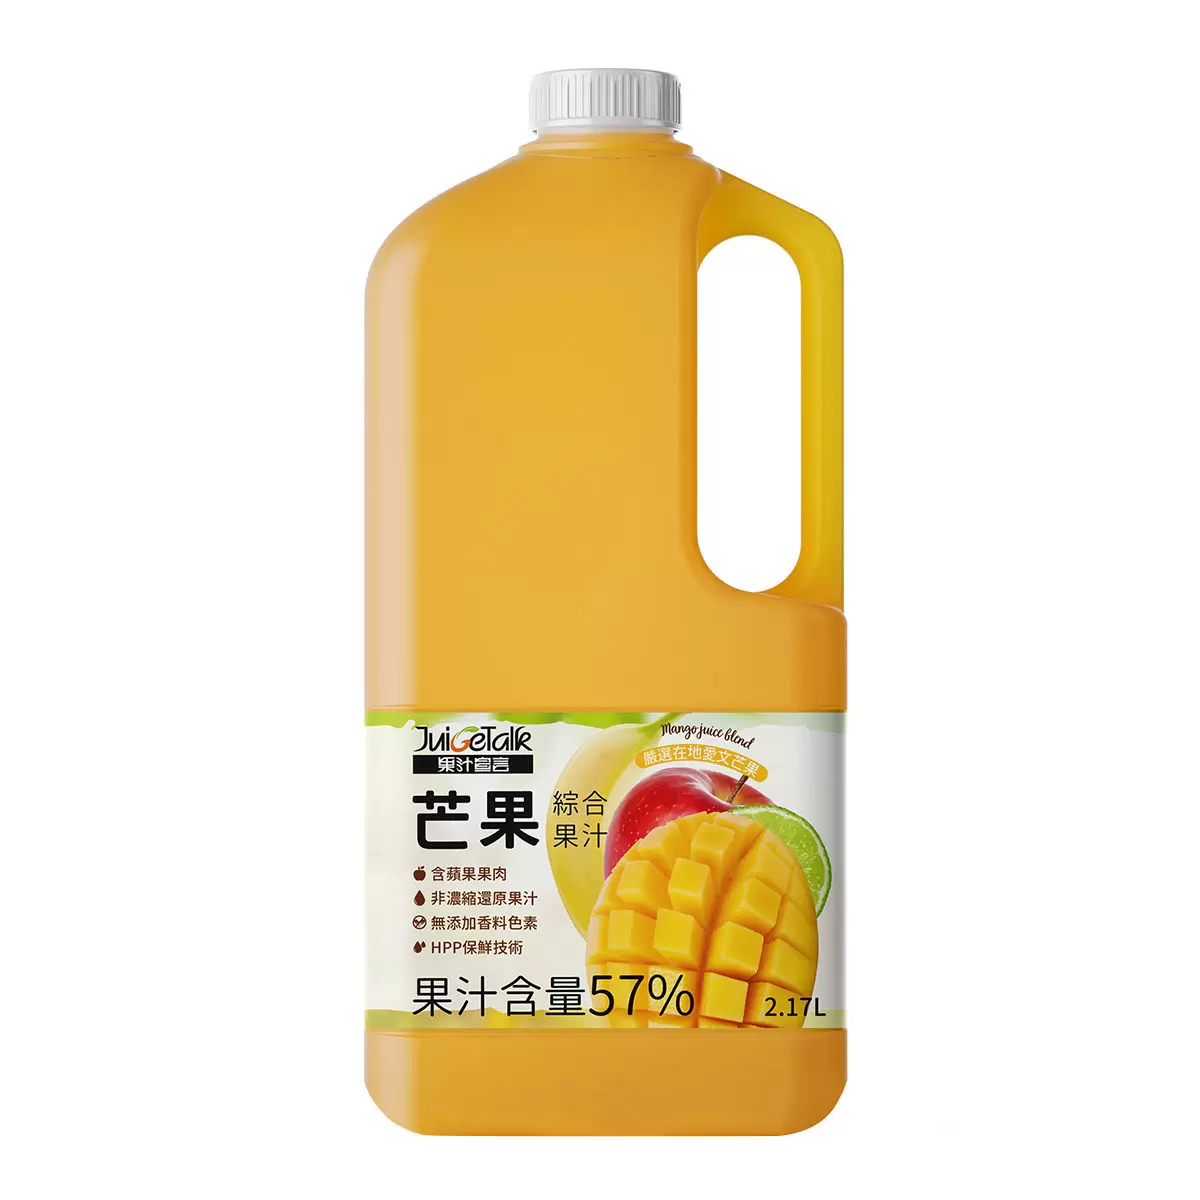 果汁宣言 芒果綜合果汁 2.17公升